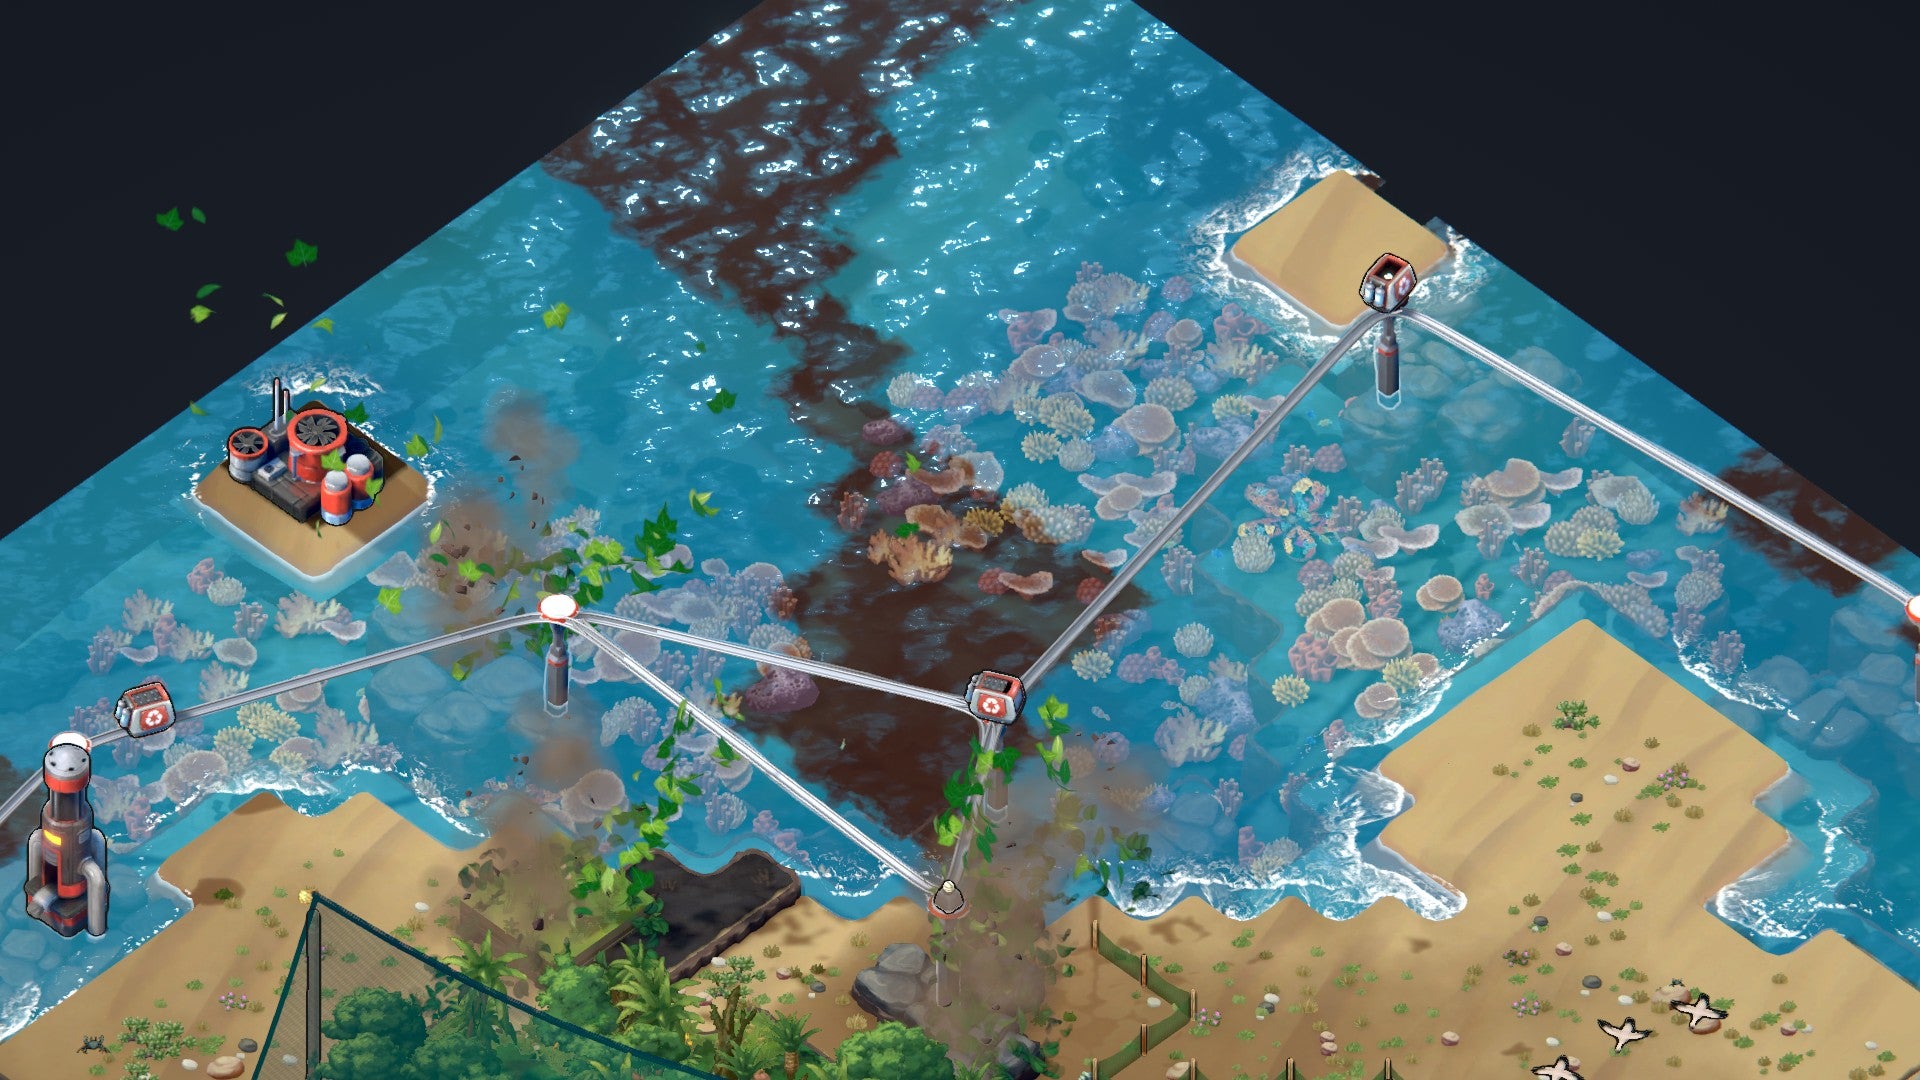 Ein Screenshot von Terra Nil, der Recycling-Monorails zeigt, die sich über Korallenriffen zu Monorail-Knoten verbinden.